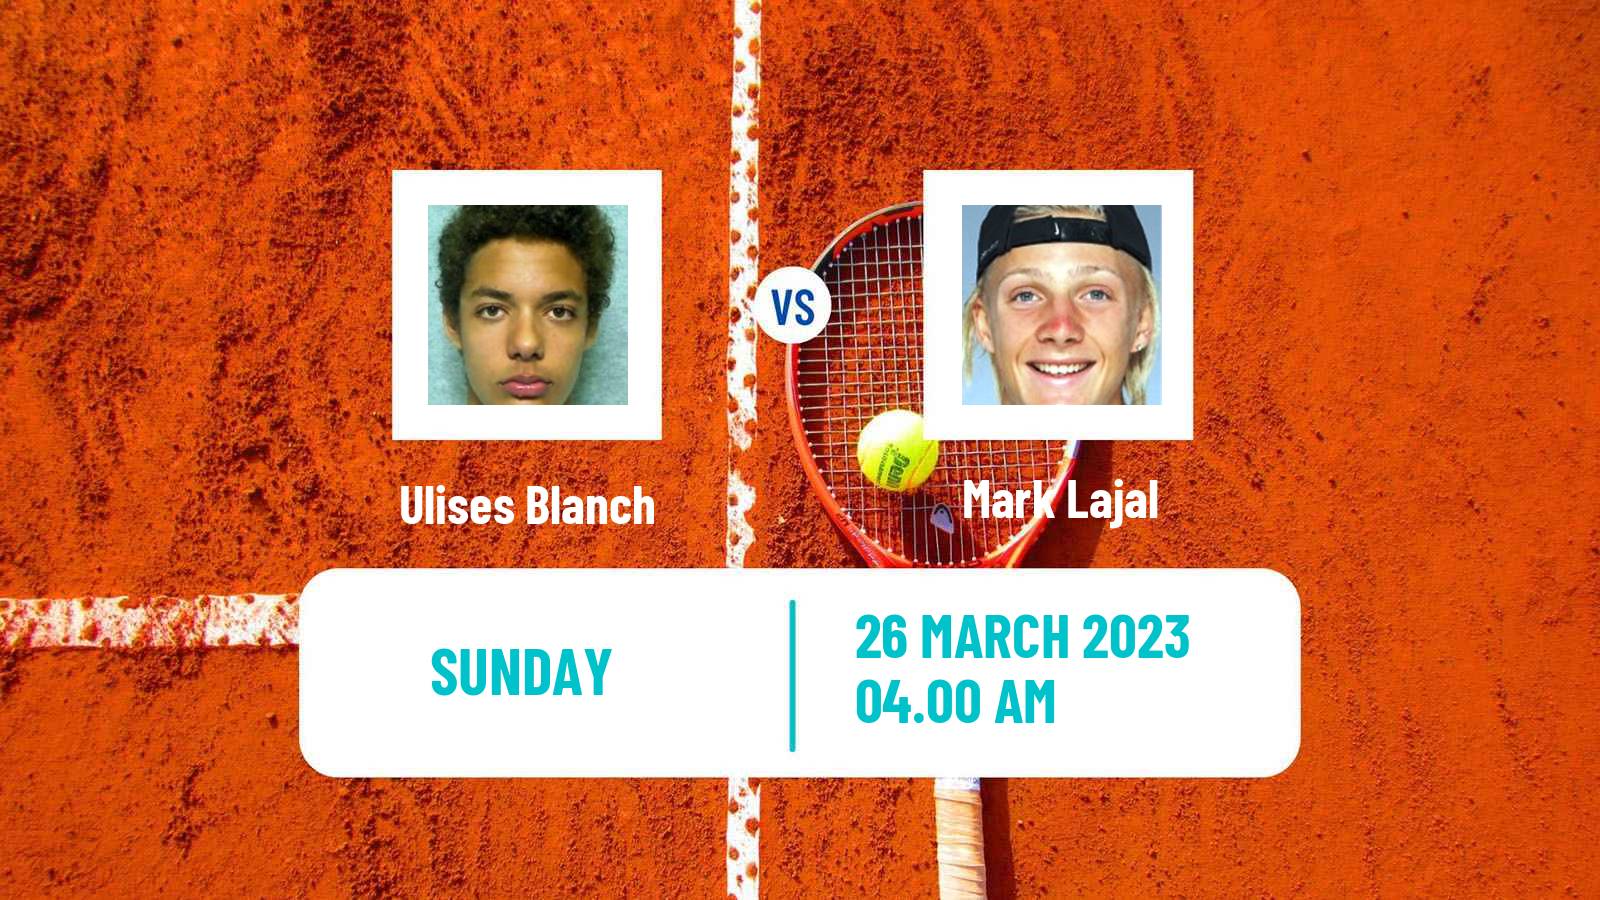 Tennis ATP Challenger Ulises Blanch - Mark Lajal